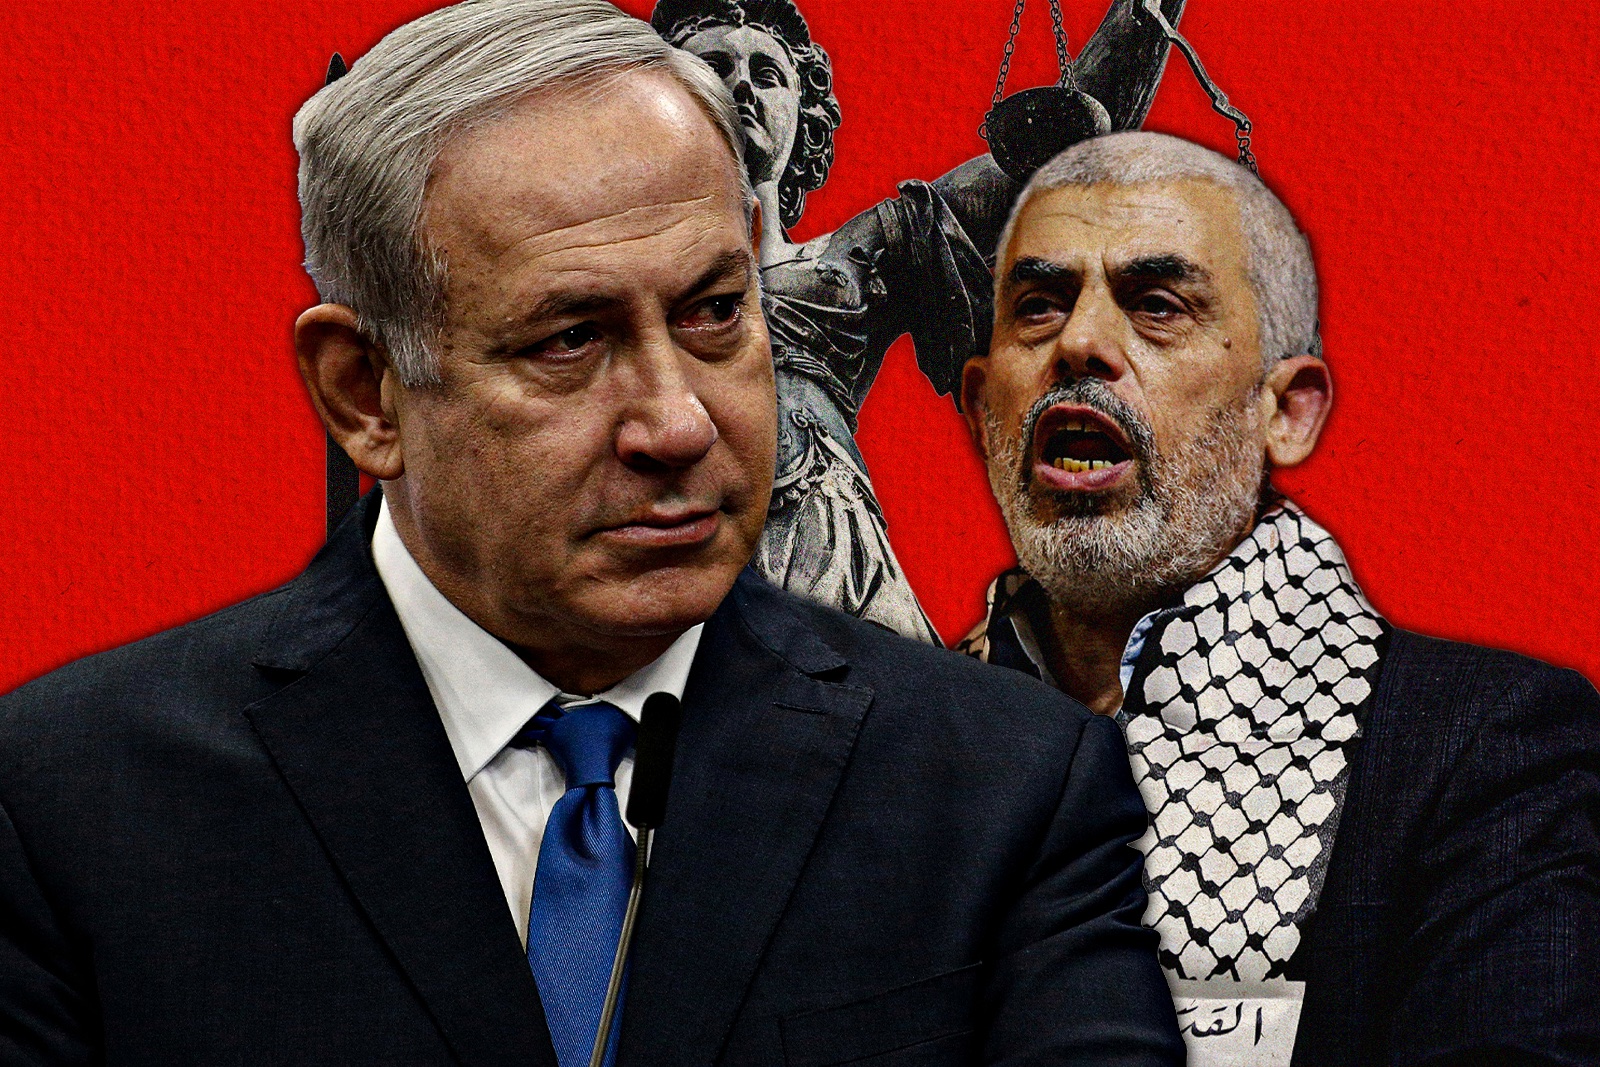 Hamas leader Yahya Sinwar and Israeli Prime Minister Benjamin Netanyahu